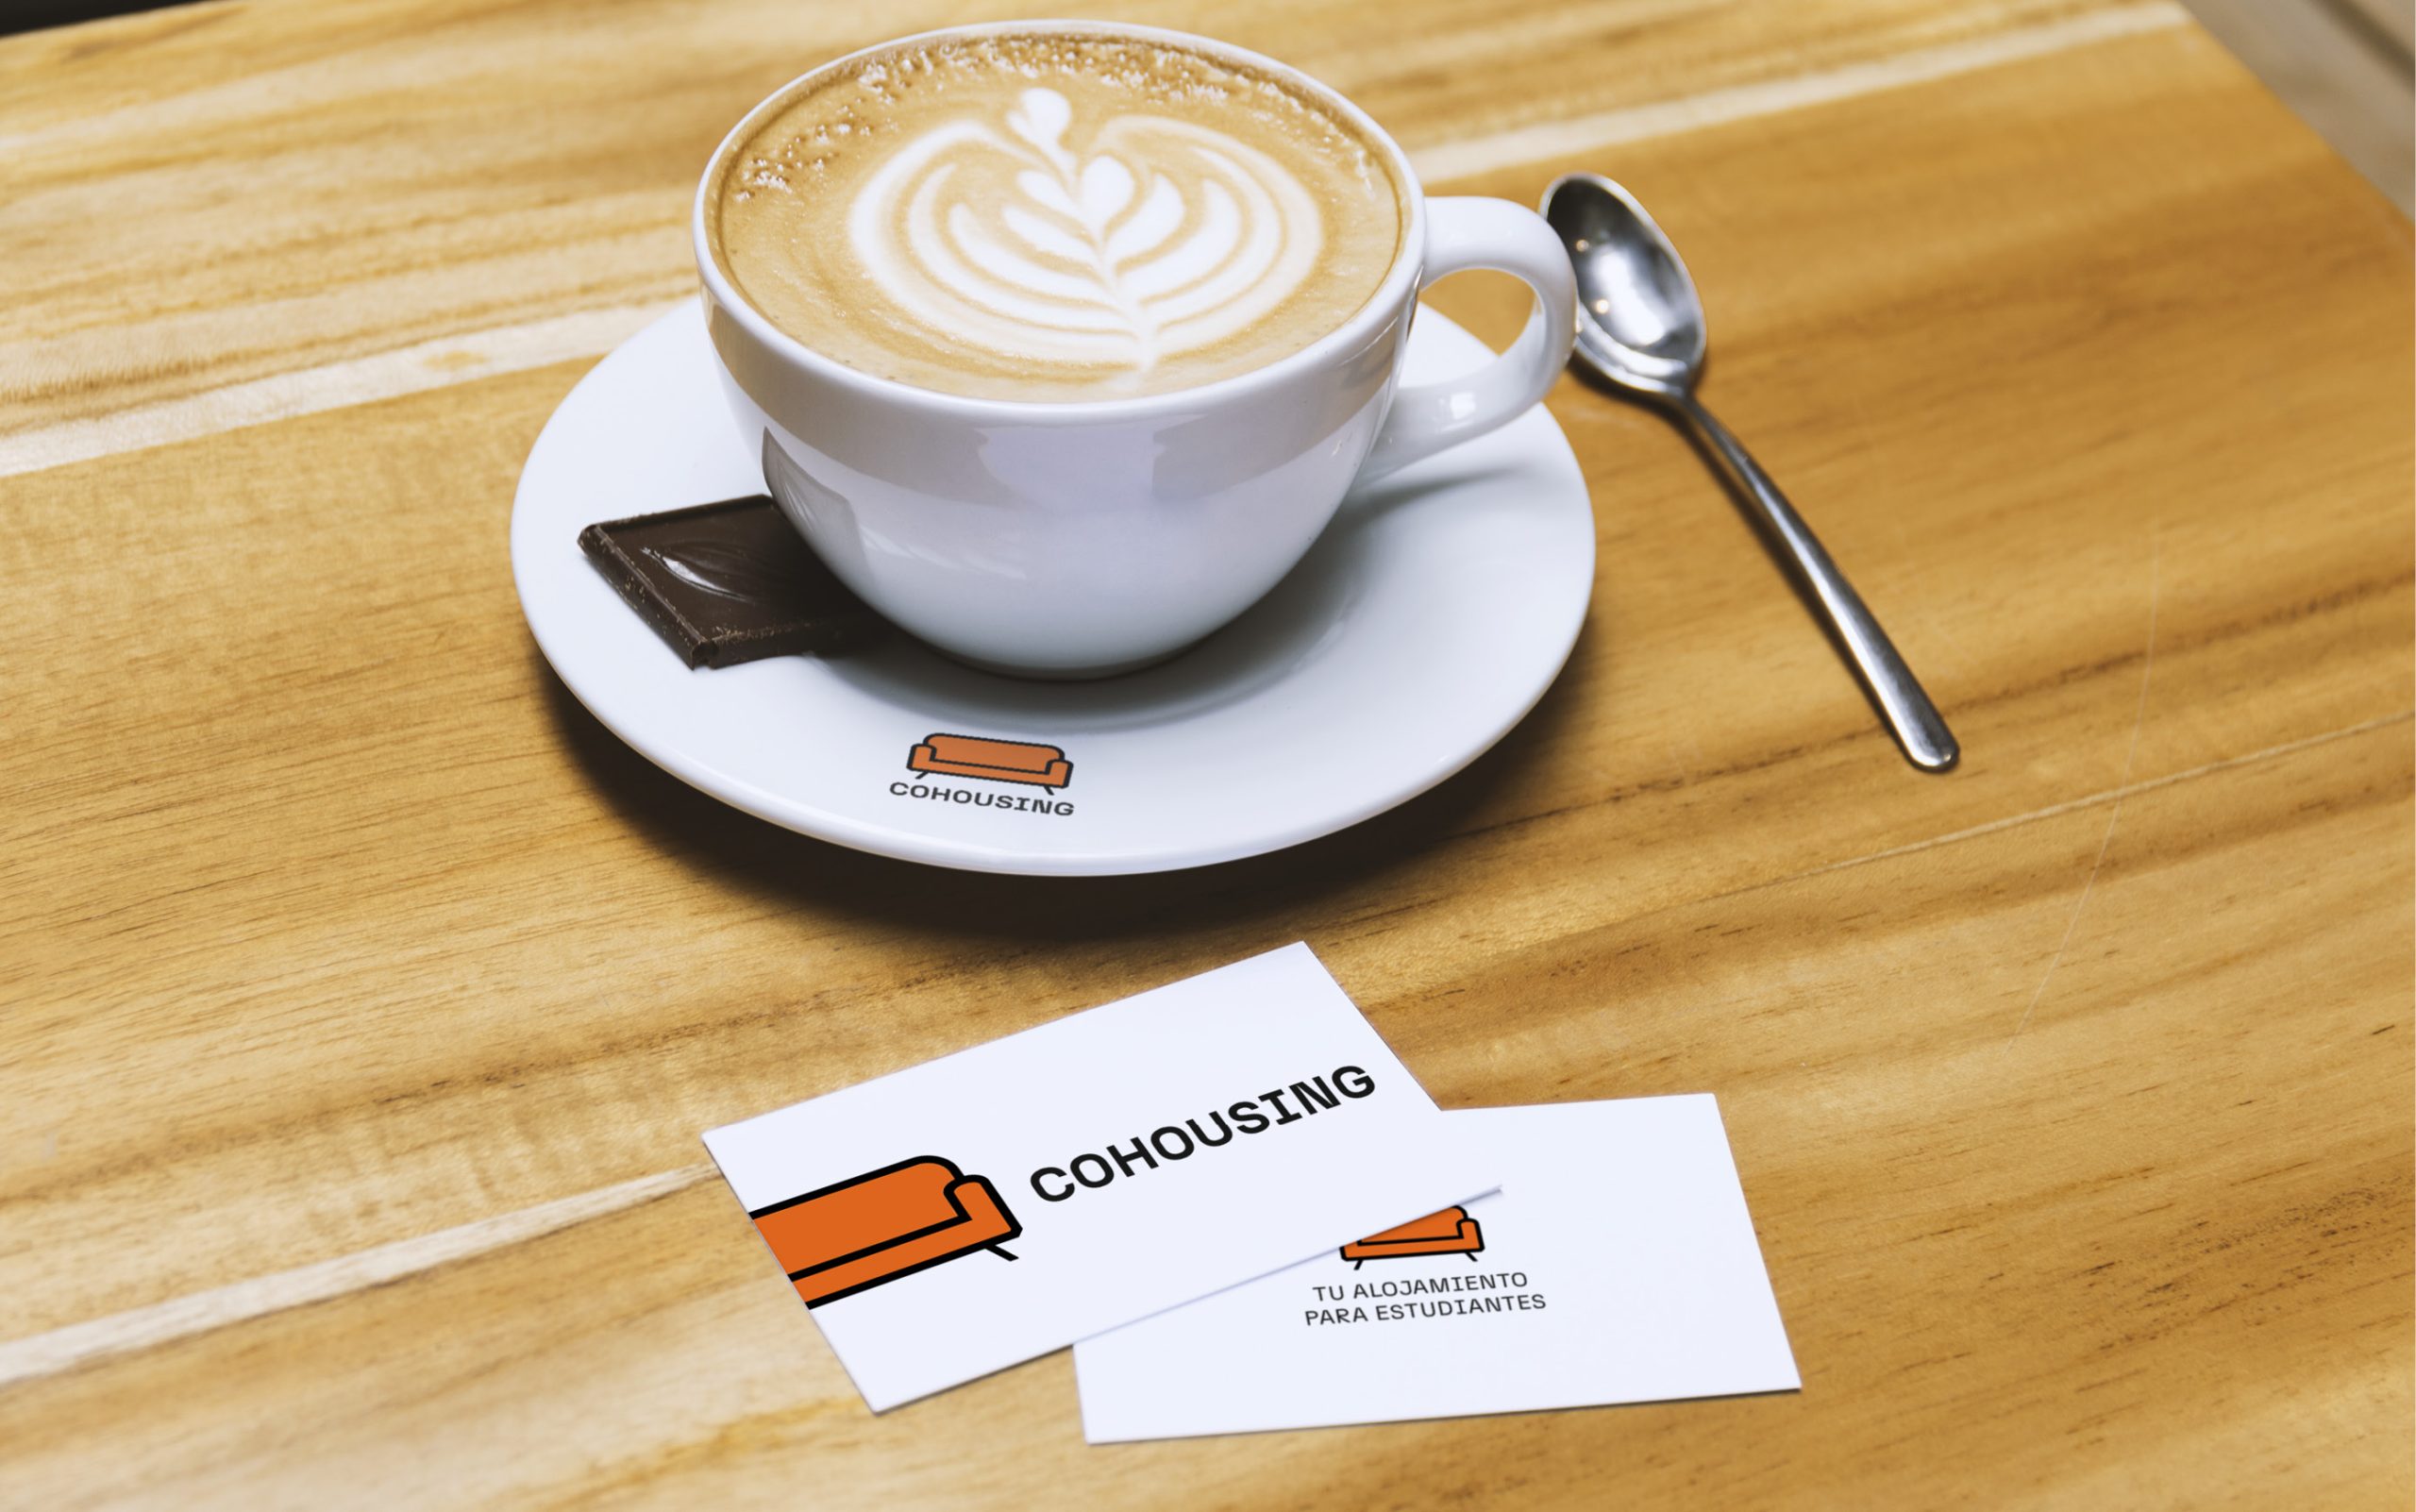 tarjetas de visita y logo en una taza de café